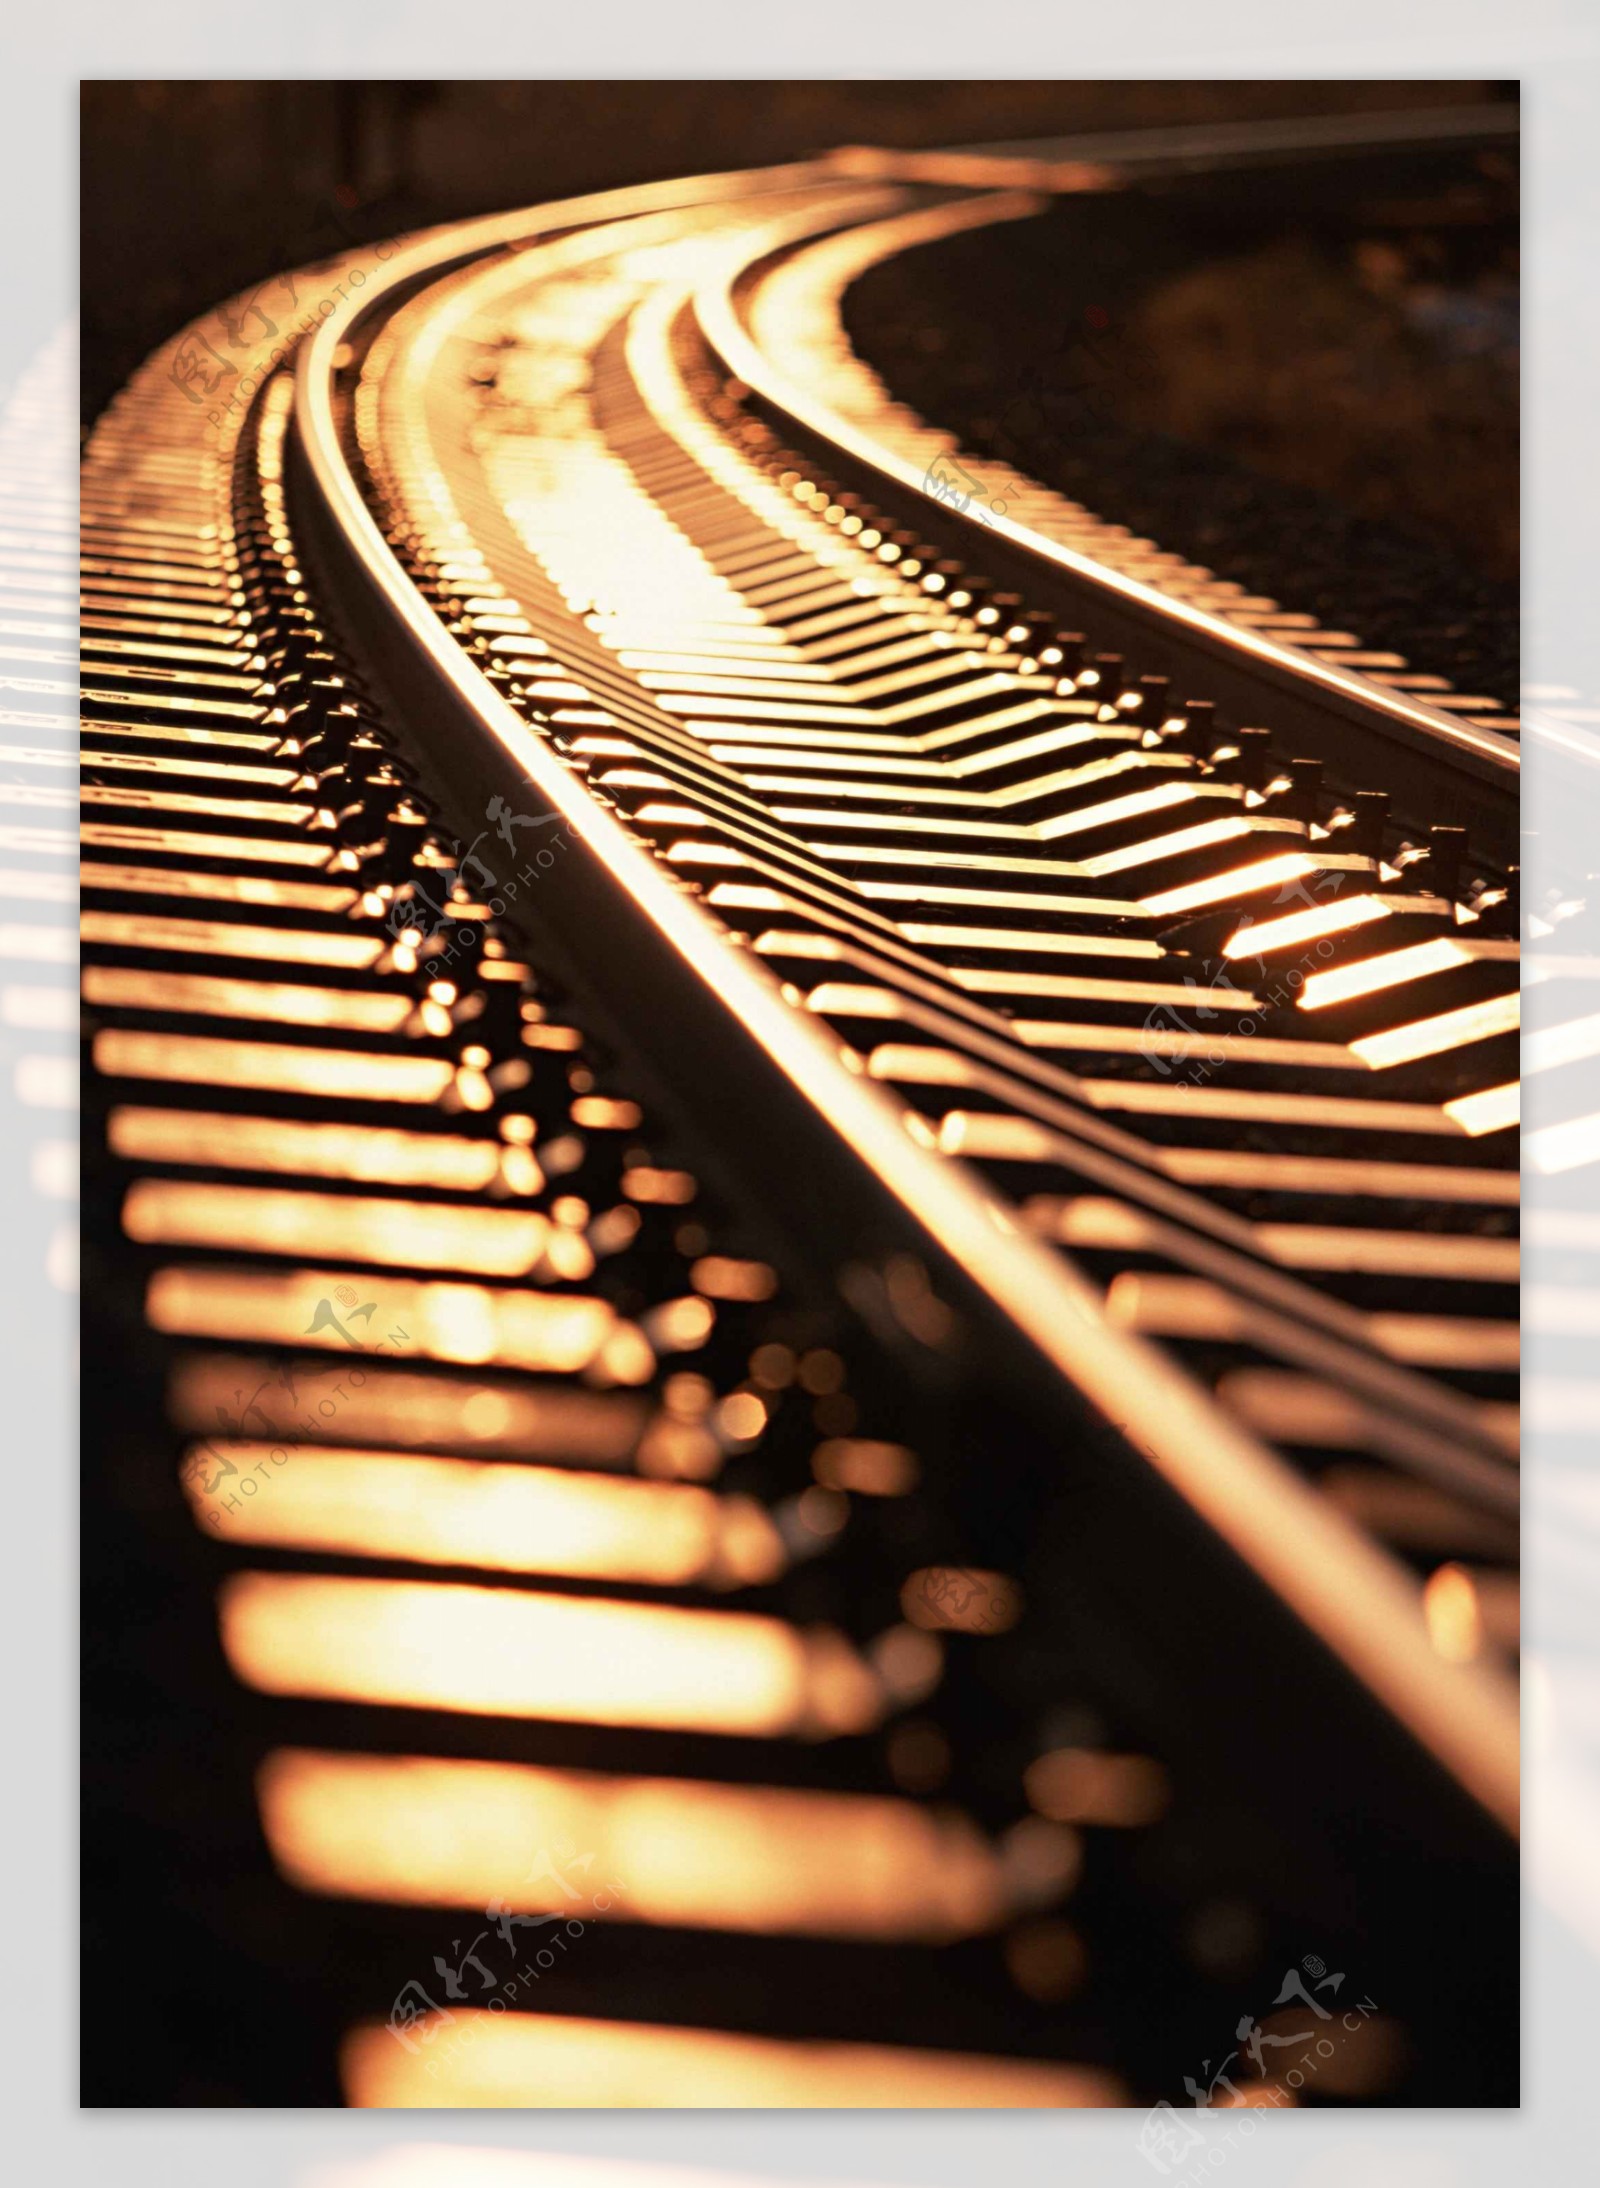 Images Gratuites : la personne, noir et blanc, Piste, chemin de fer ...